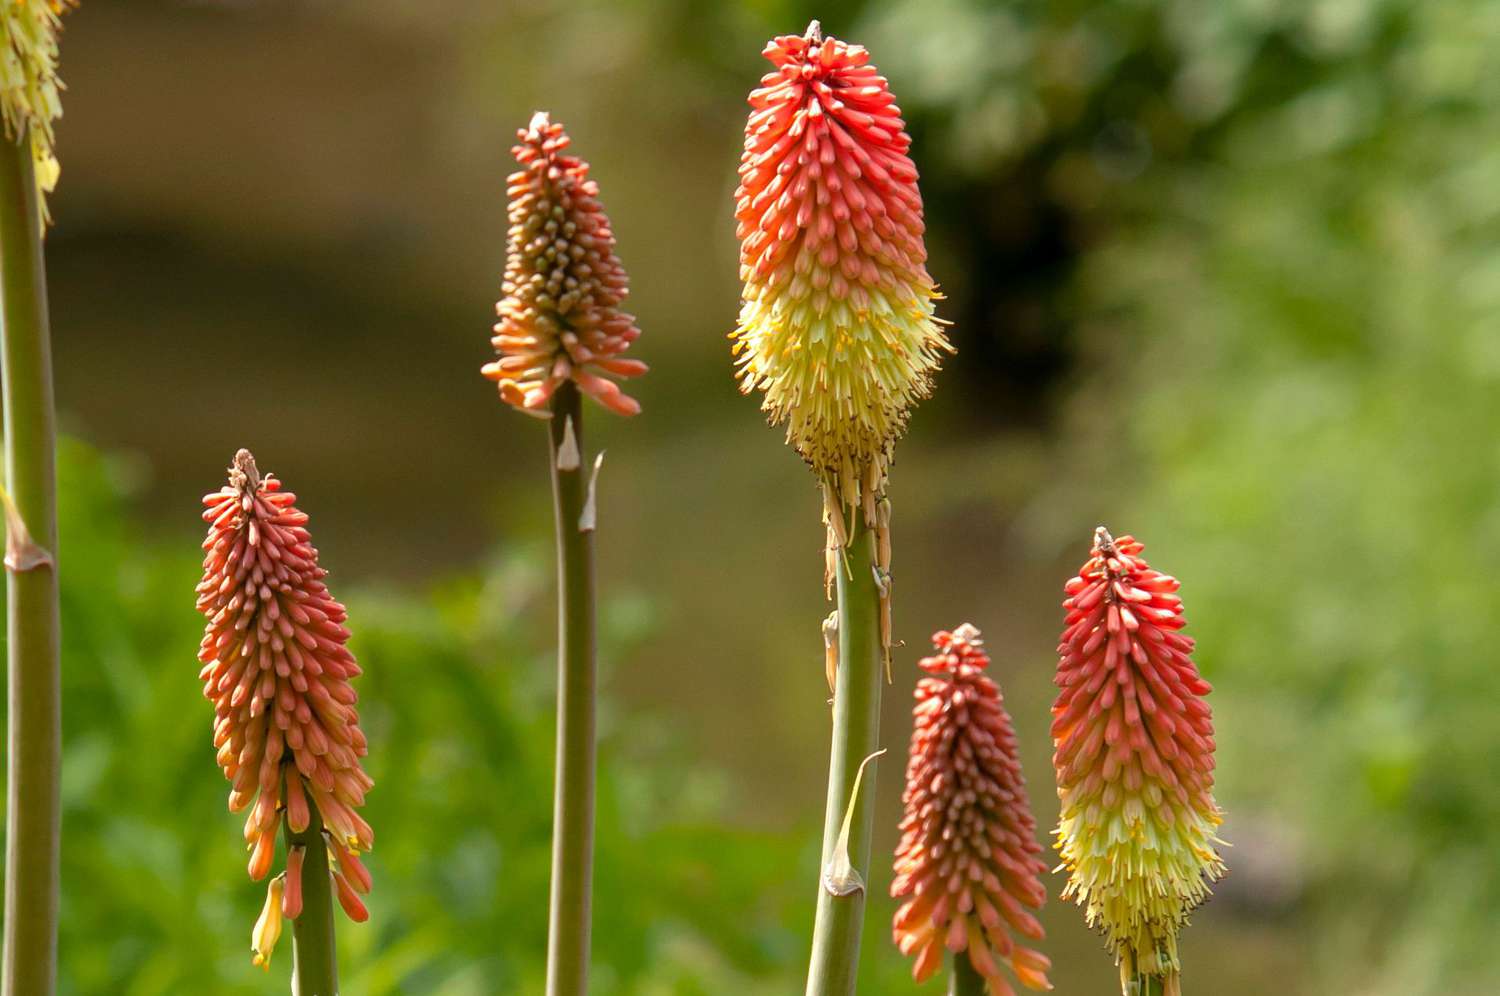 Rote Schürhakenpflanze mit roten und gelben schürhakenartigen Blüten an hohen Stielen in Nahaufnahme